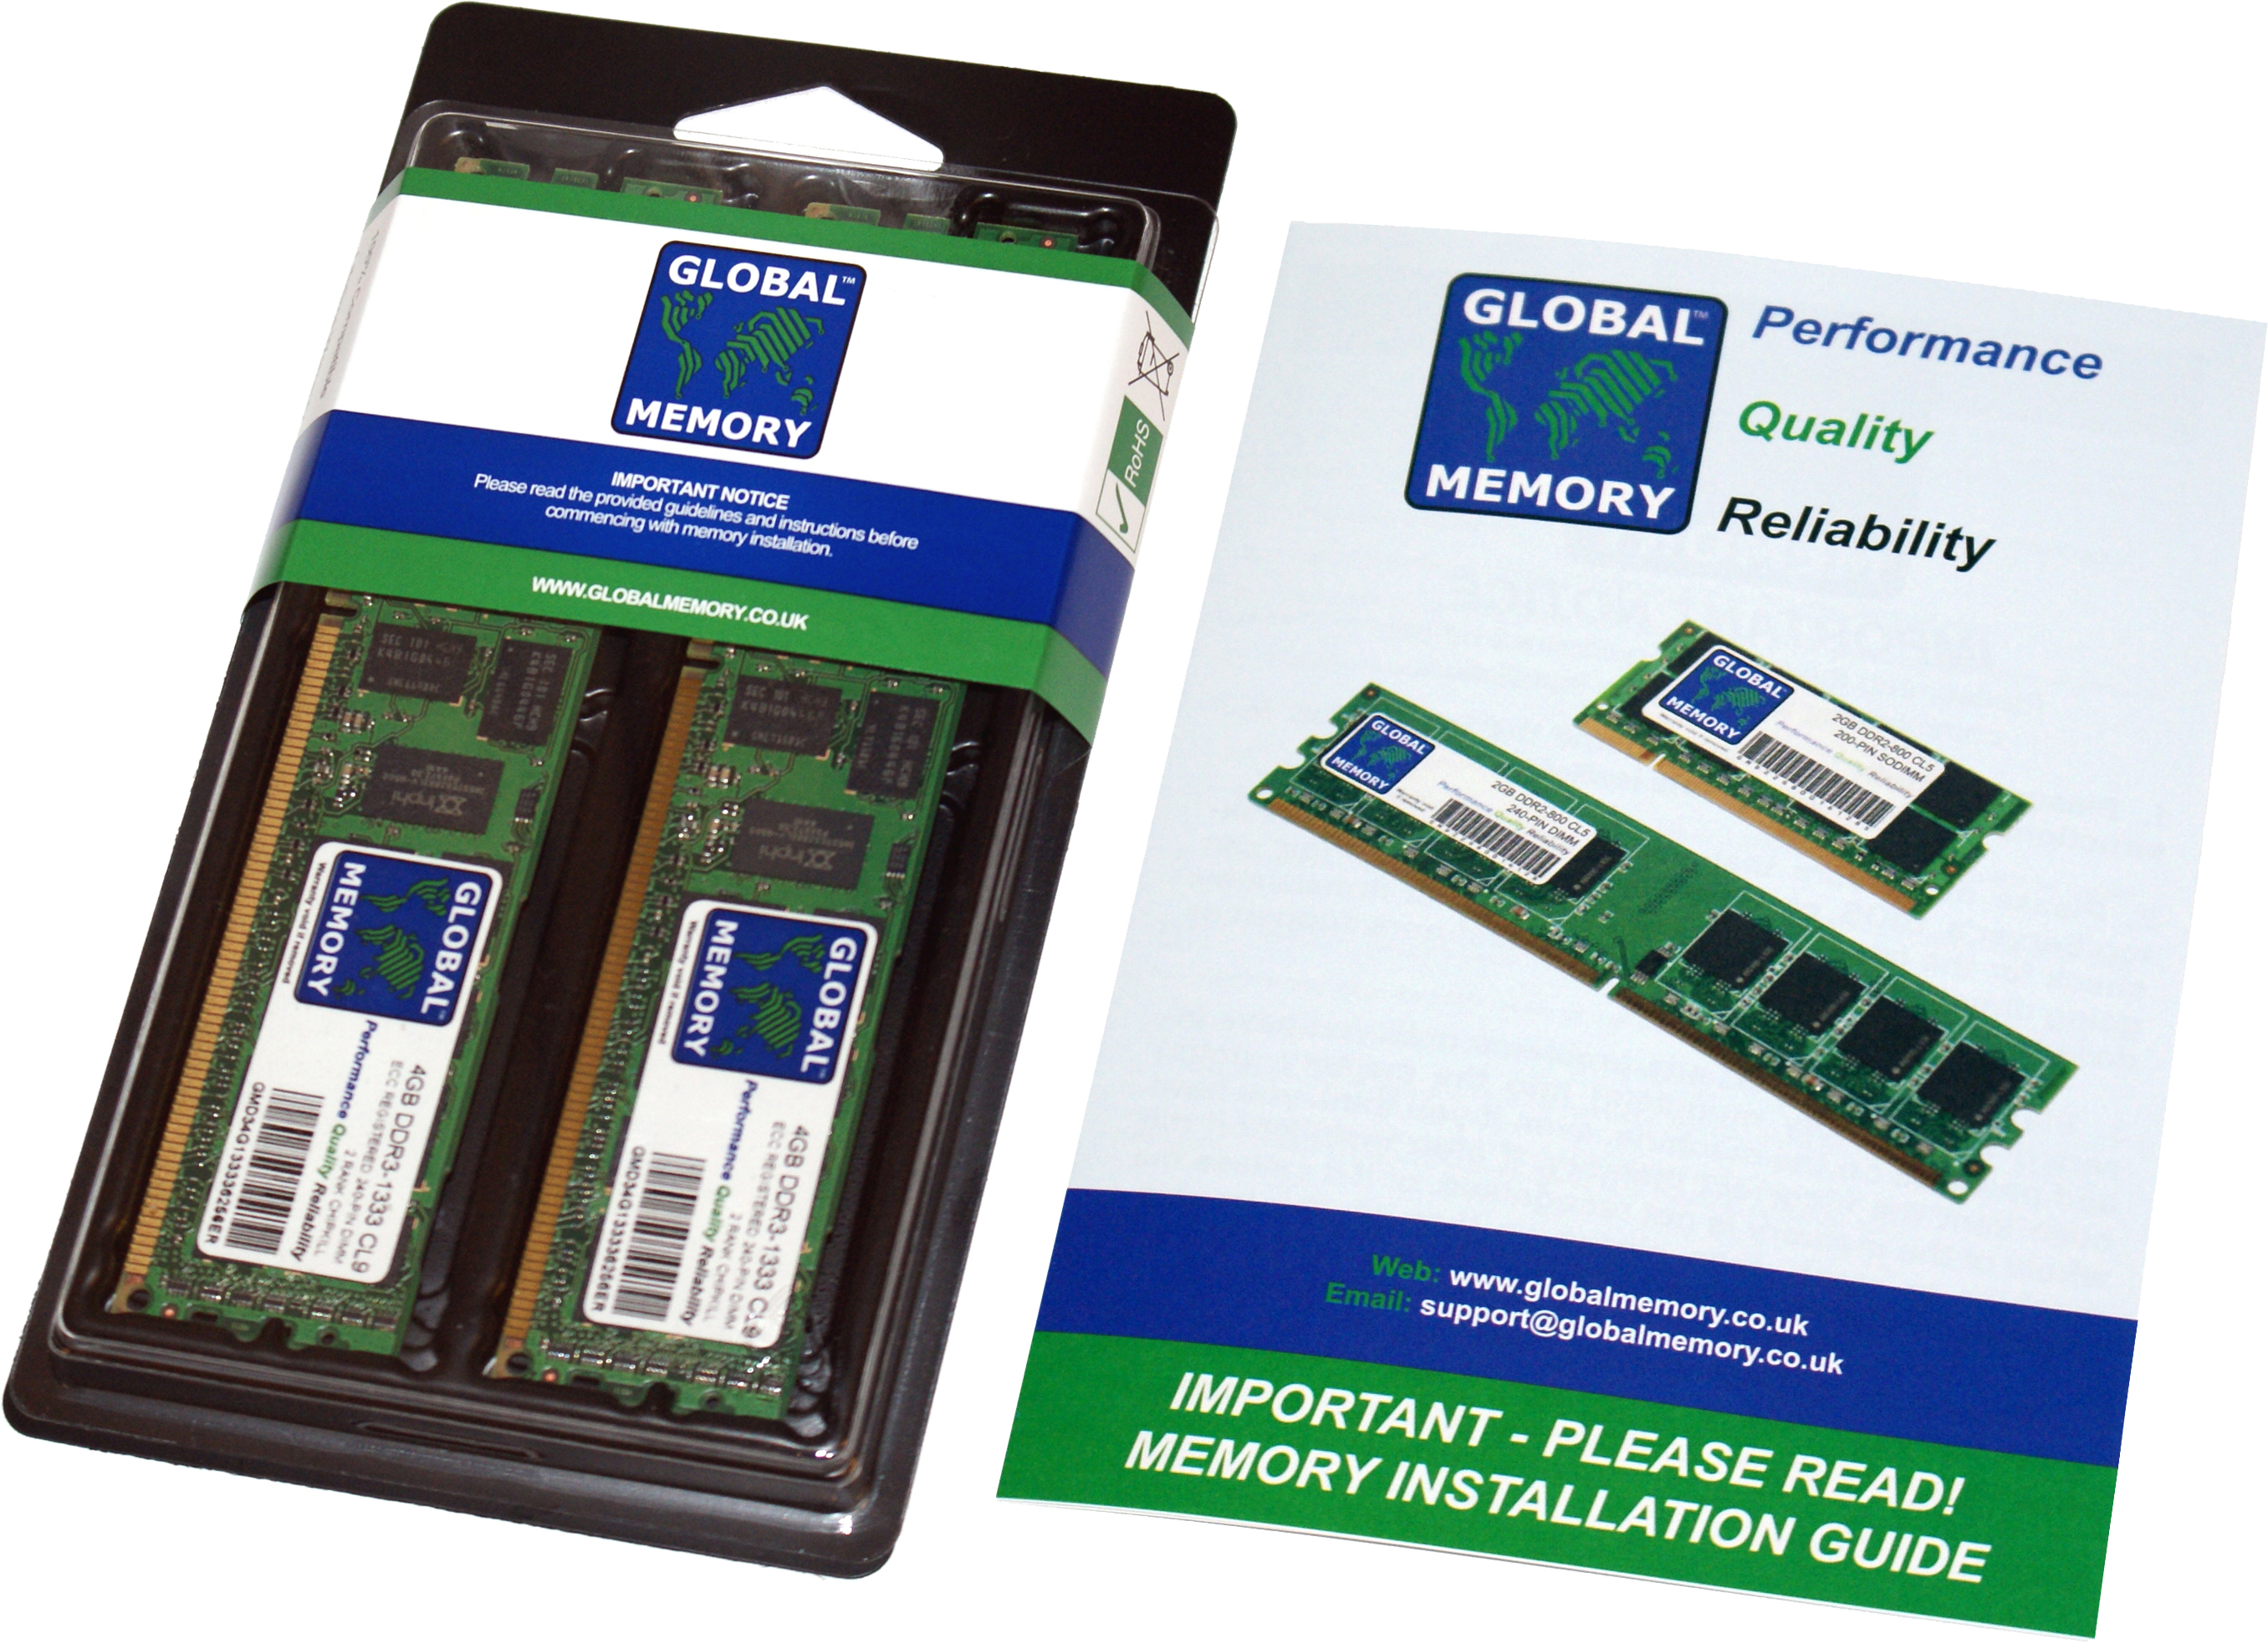 128GB (2 x 64GB) DDR4 2666MHz PC4-21300 288-PIN LOAD REDUCED ECC REGISTERED DIMM (LRDIMM) MEMORY RAM KIT FOR HEWLETT-PACKARD SERVERS/WORKSTATIONS (8 RANK KIT CHIPKILL)